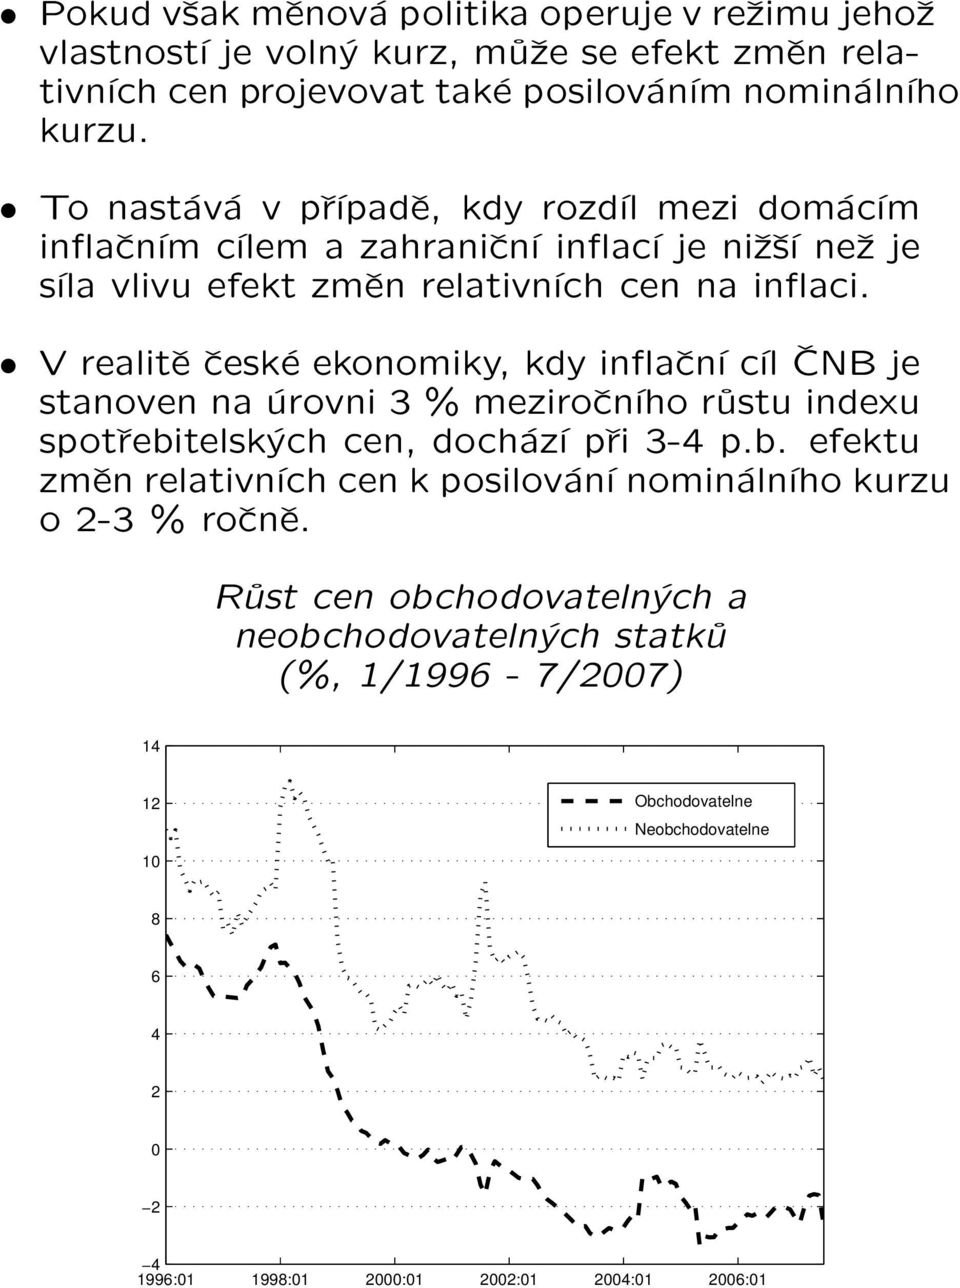 V realitě české ekonomiky, kdy inflační cíl ČNB je stanoven na úrovni 3 % meziročního růstu indexu spotřebi